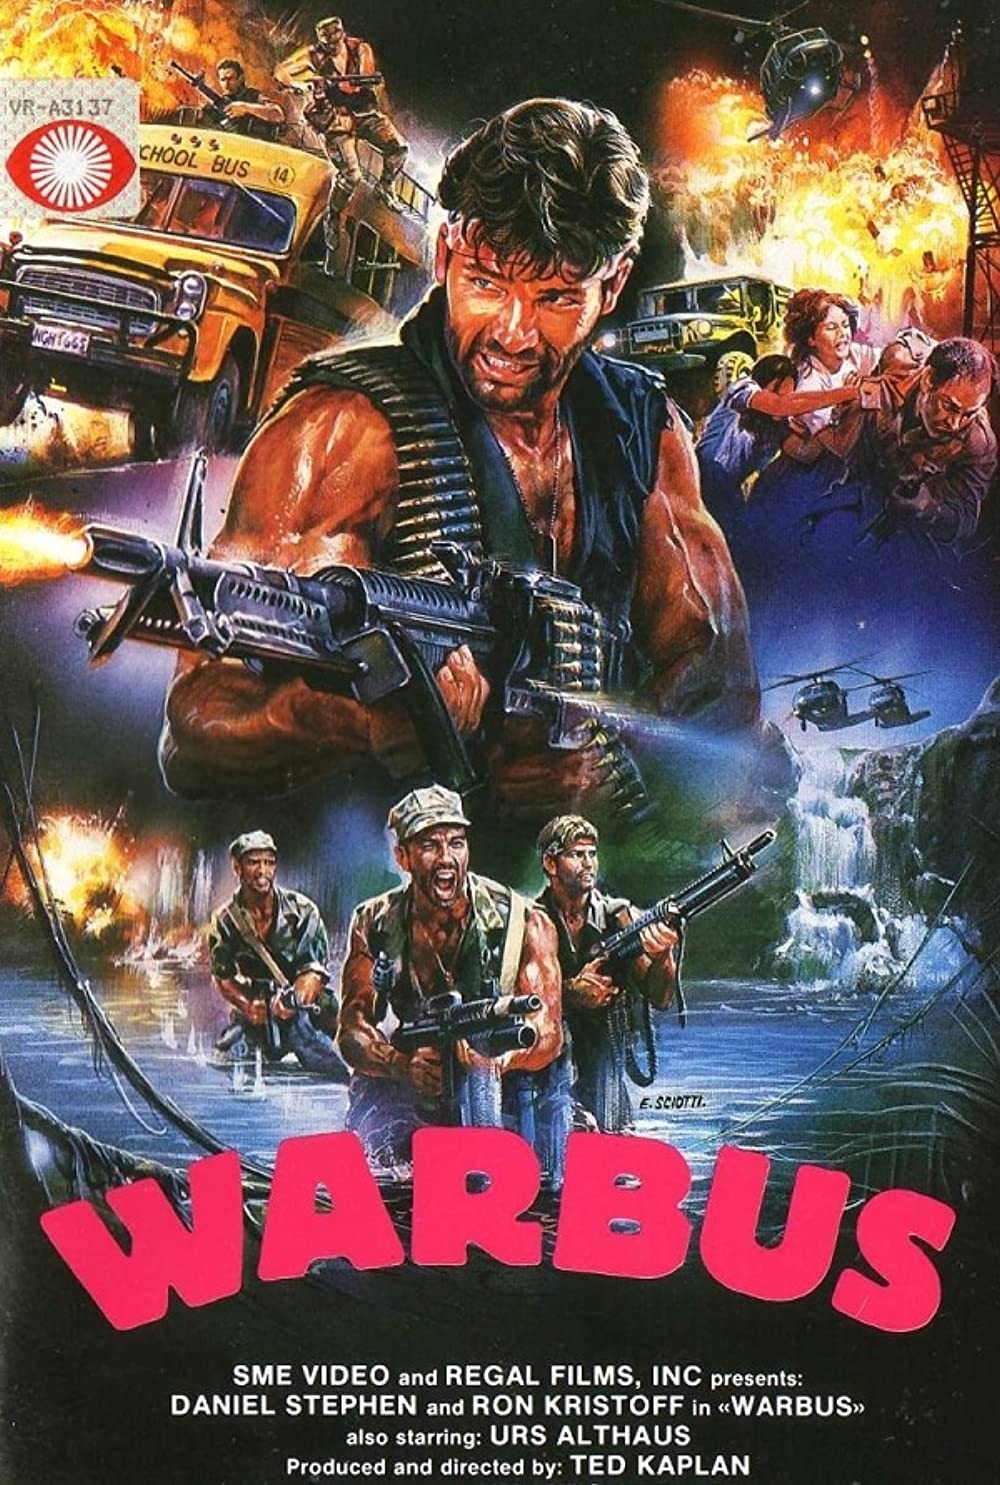 War Bus (1985)